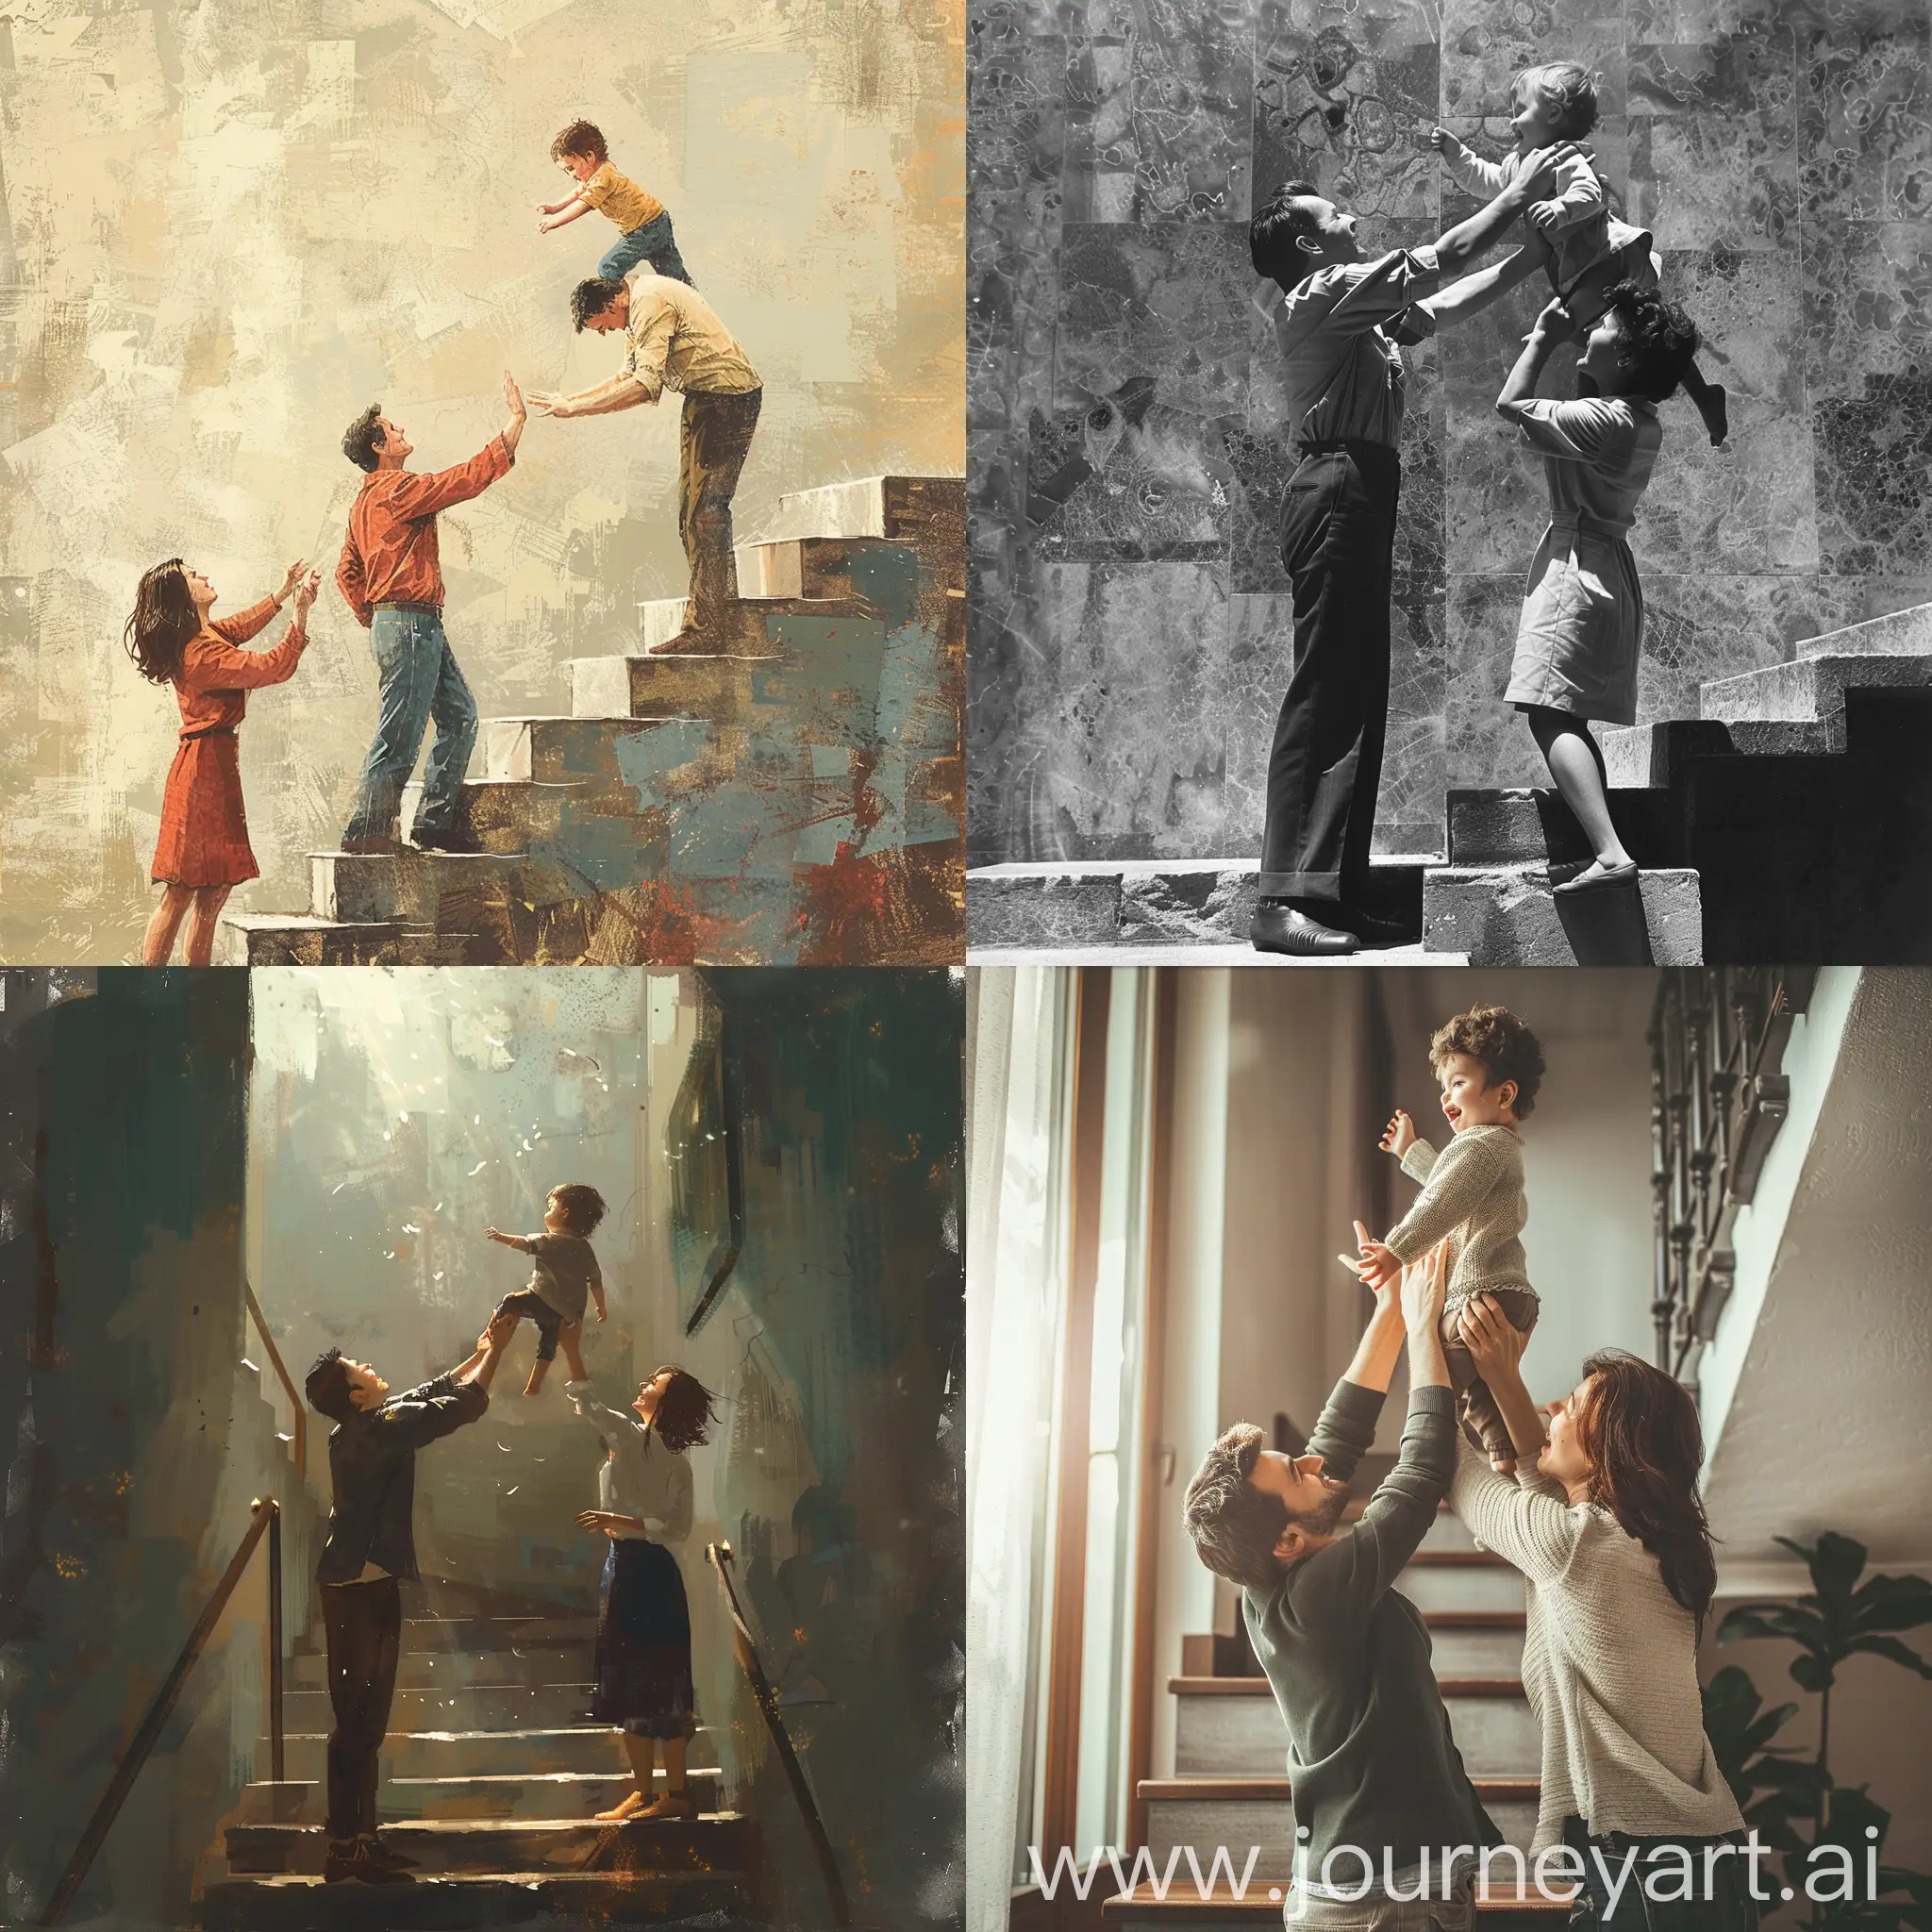 Папа и мама держат на руках ребёнка, стоят на нижней ступеньки лестницы, на вытянутых руках вверх подсаживают ребёнка на более верхнюю ступеньку этой лесницы, ребёнок пытается ухватиться за верхнюю ступеньку, всё улыбаются и счастливы